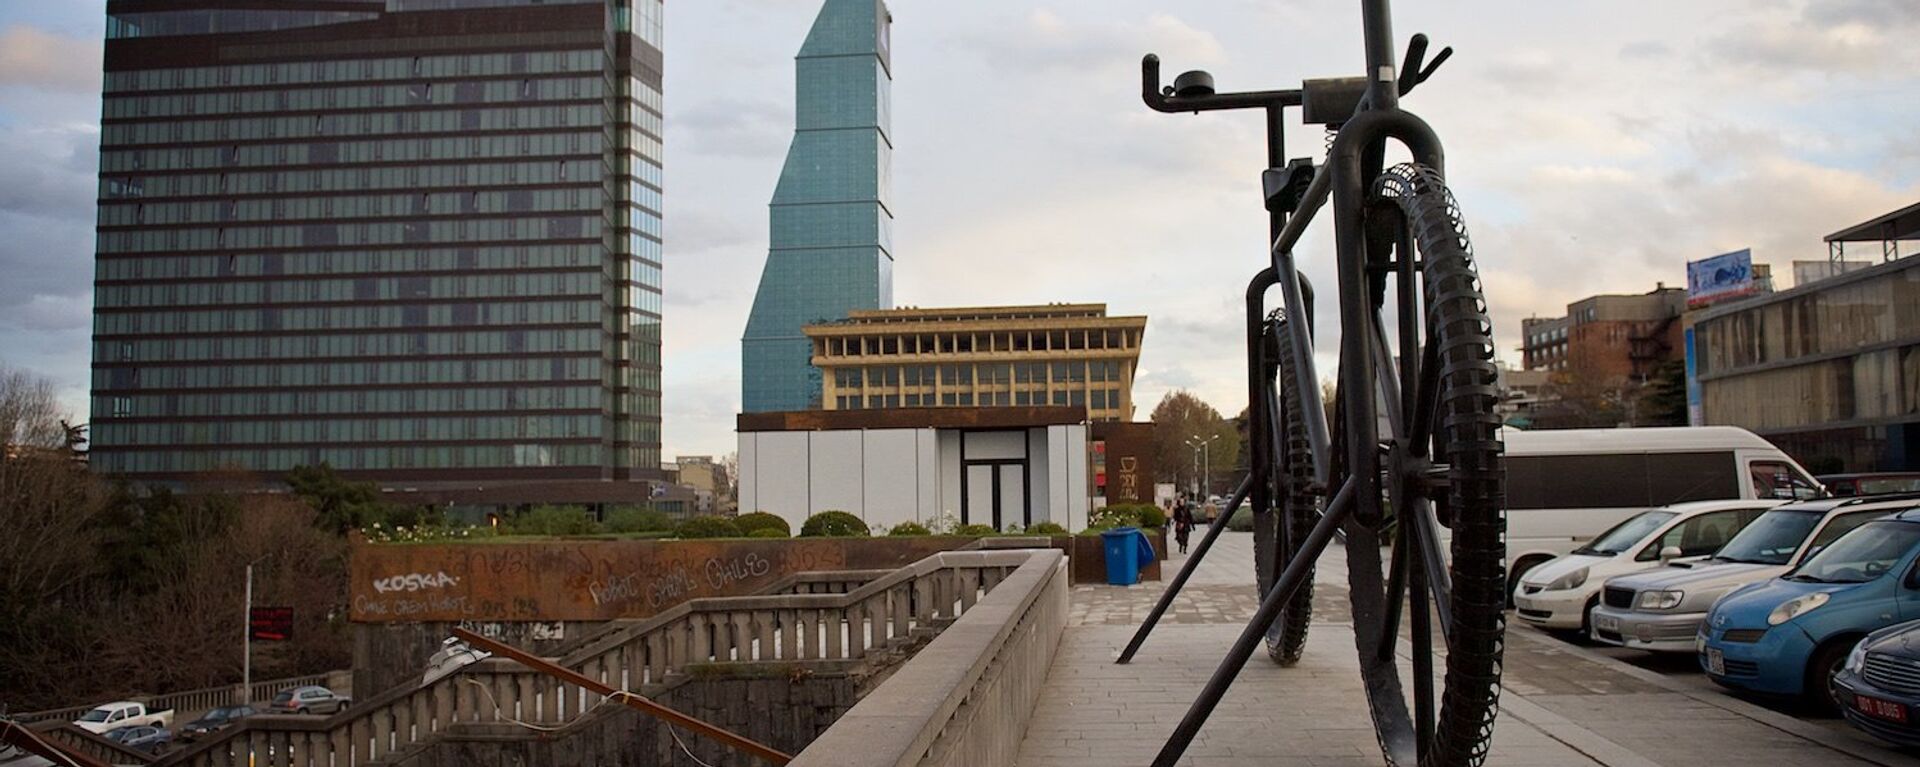 Памятник велосипеду и здоровому образу жизни на площади Революции роз в Тбилиси - Sputnik Грузия, 1920, 15.06.2019